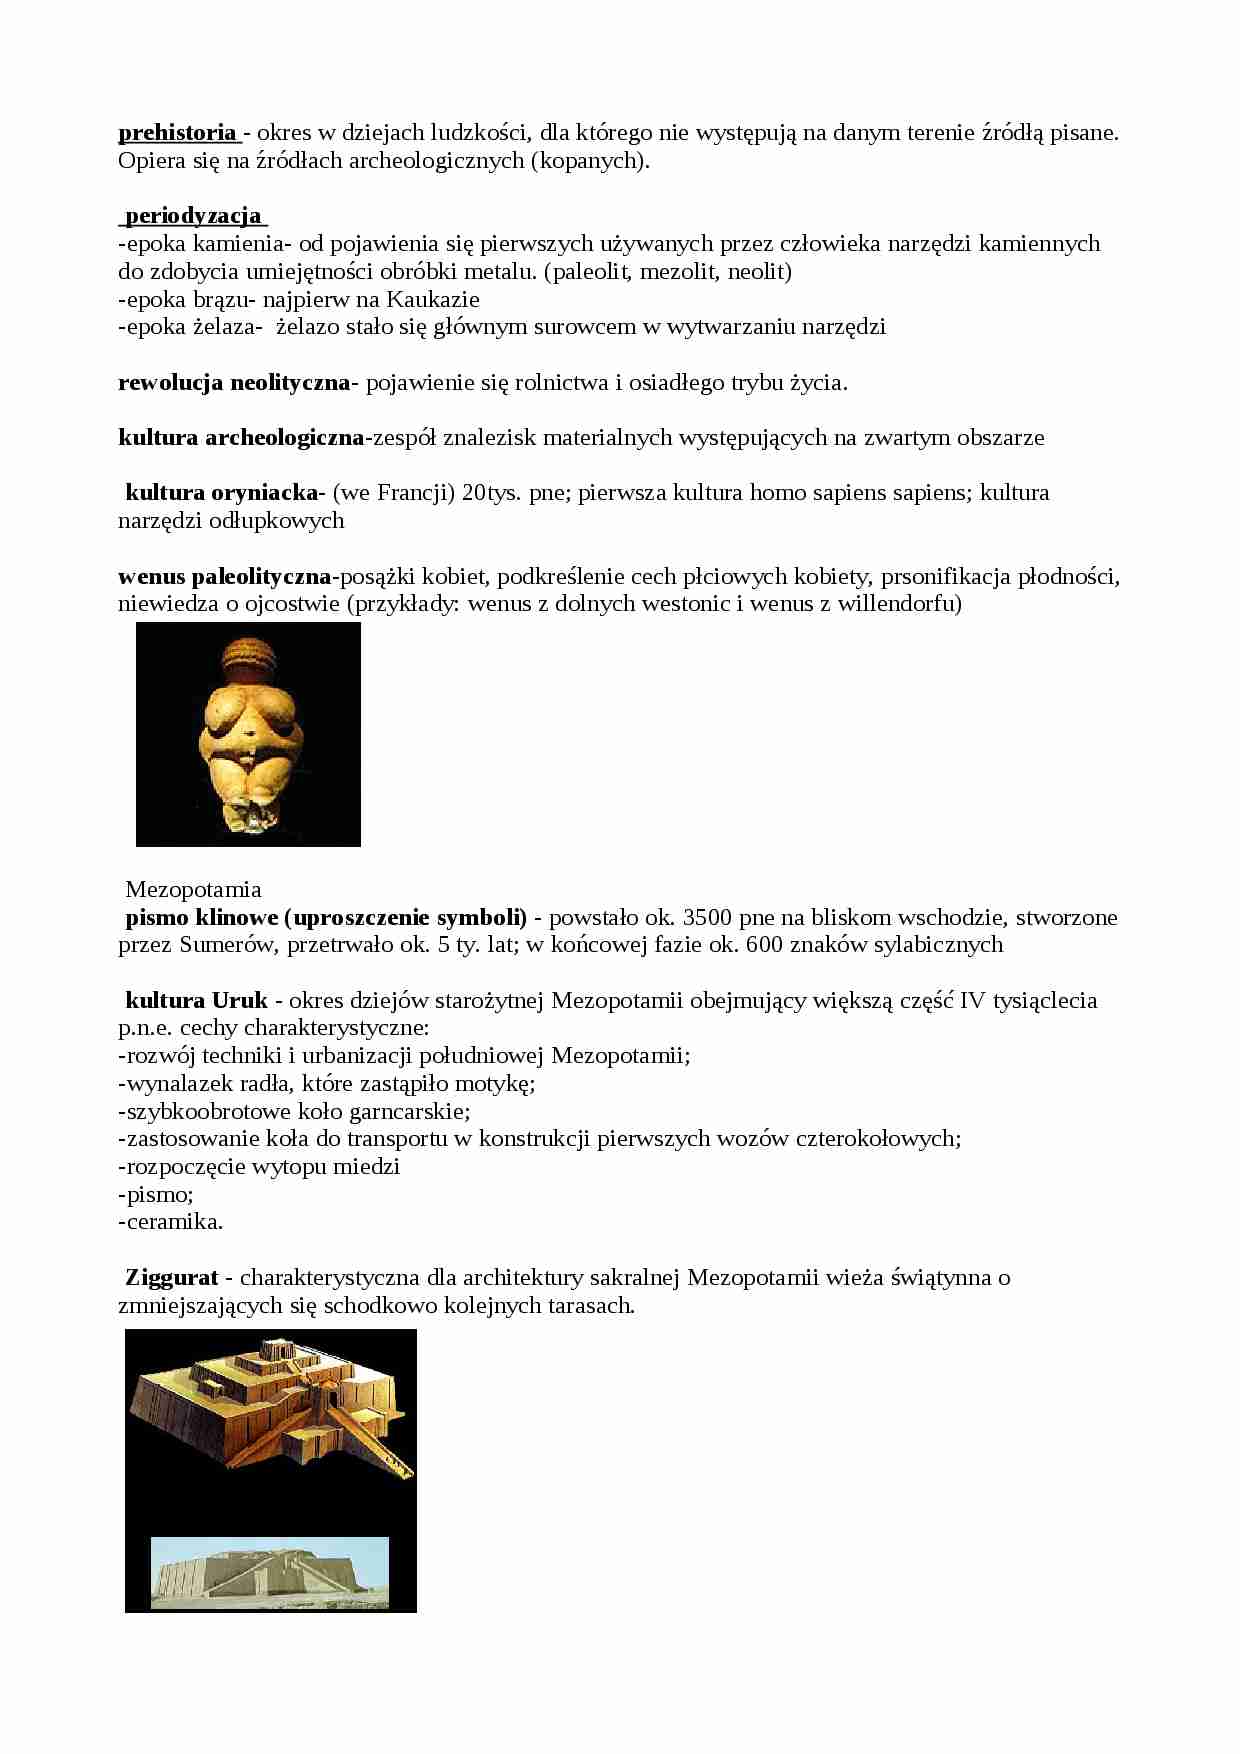 Historia sztuki (od prehistorii do starożytnej Grecji) - strona 1